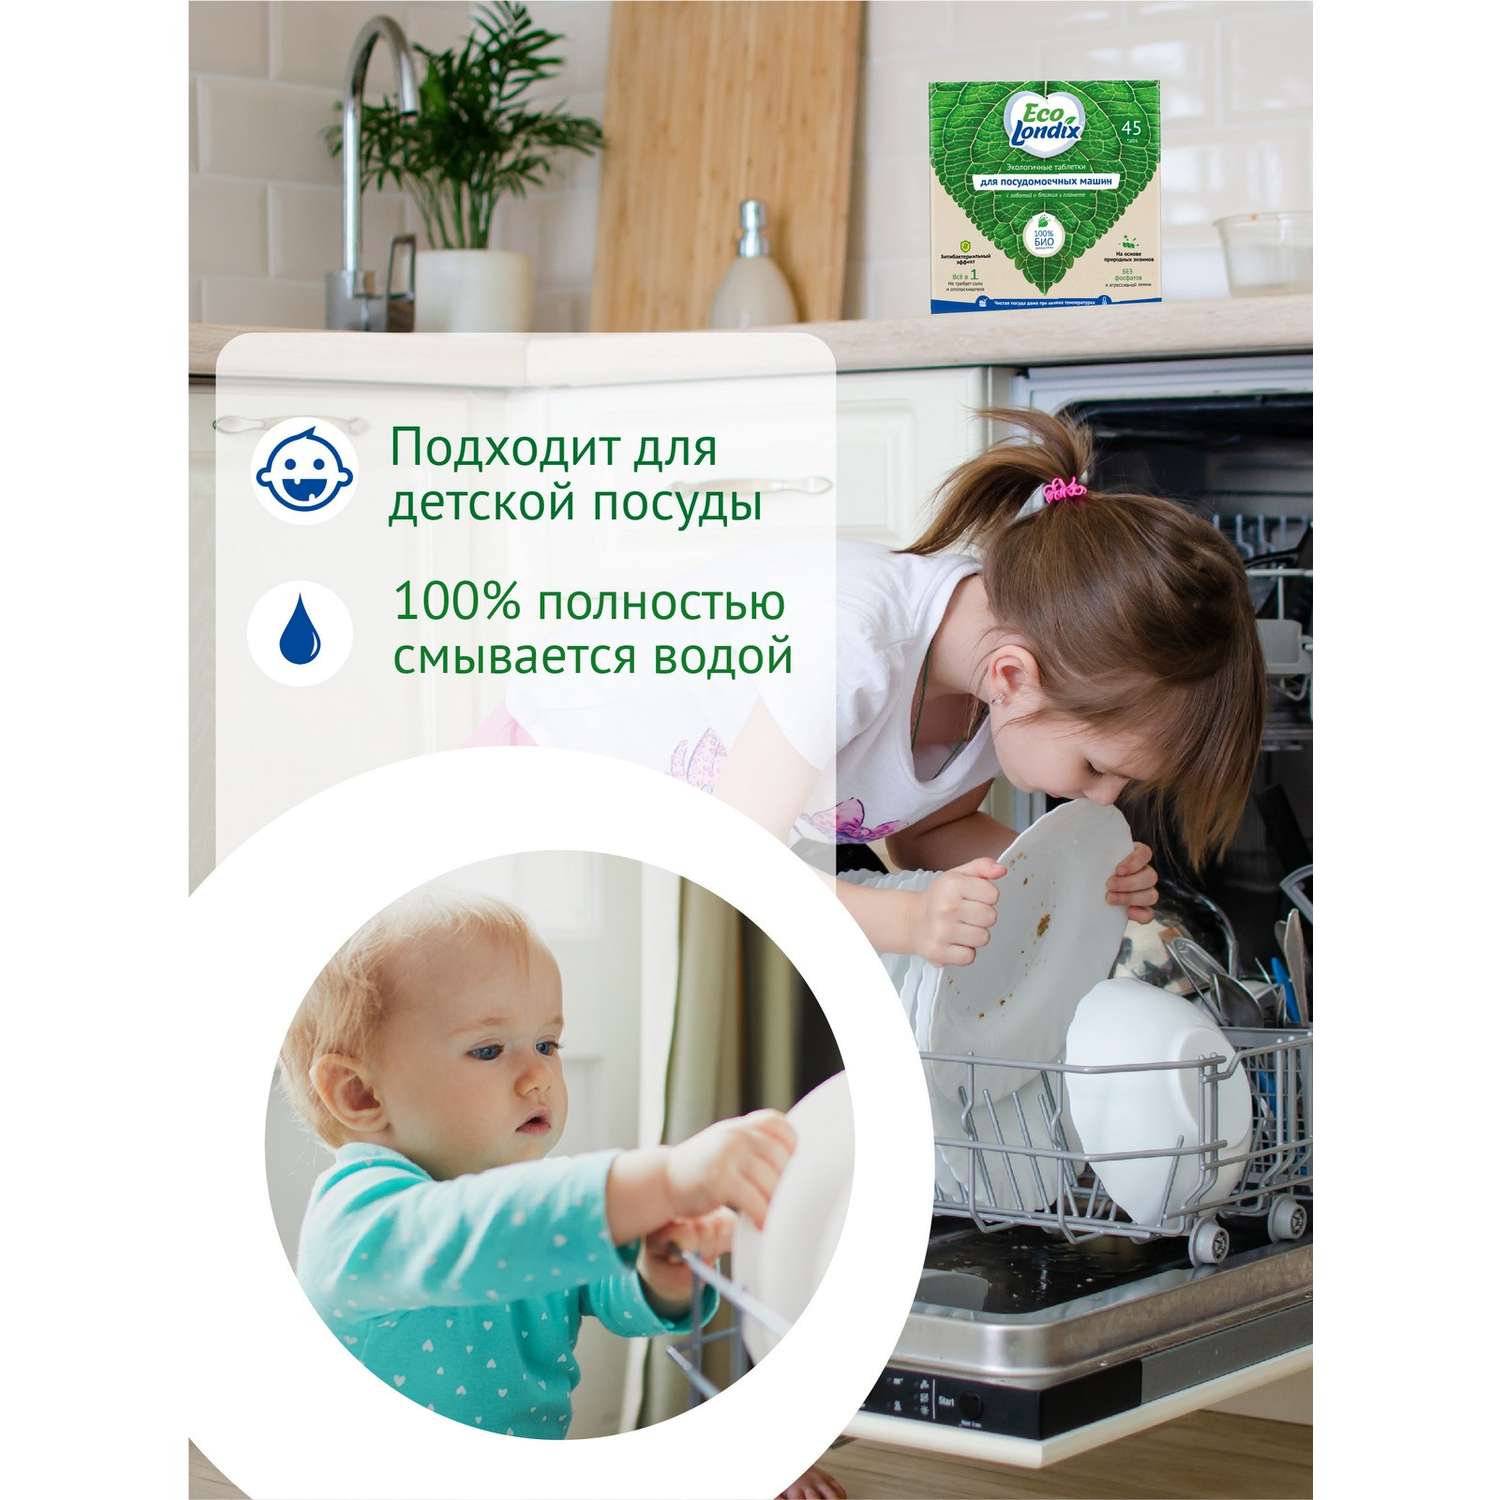 Таблетки Londix для посудомоечных машин экологичные бесфосфатные 45 шт - фото 5